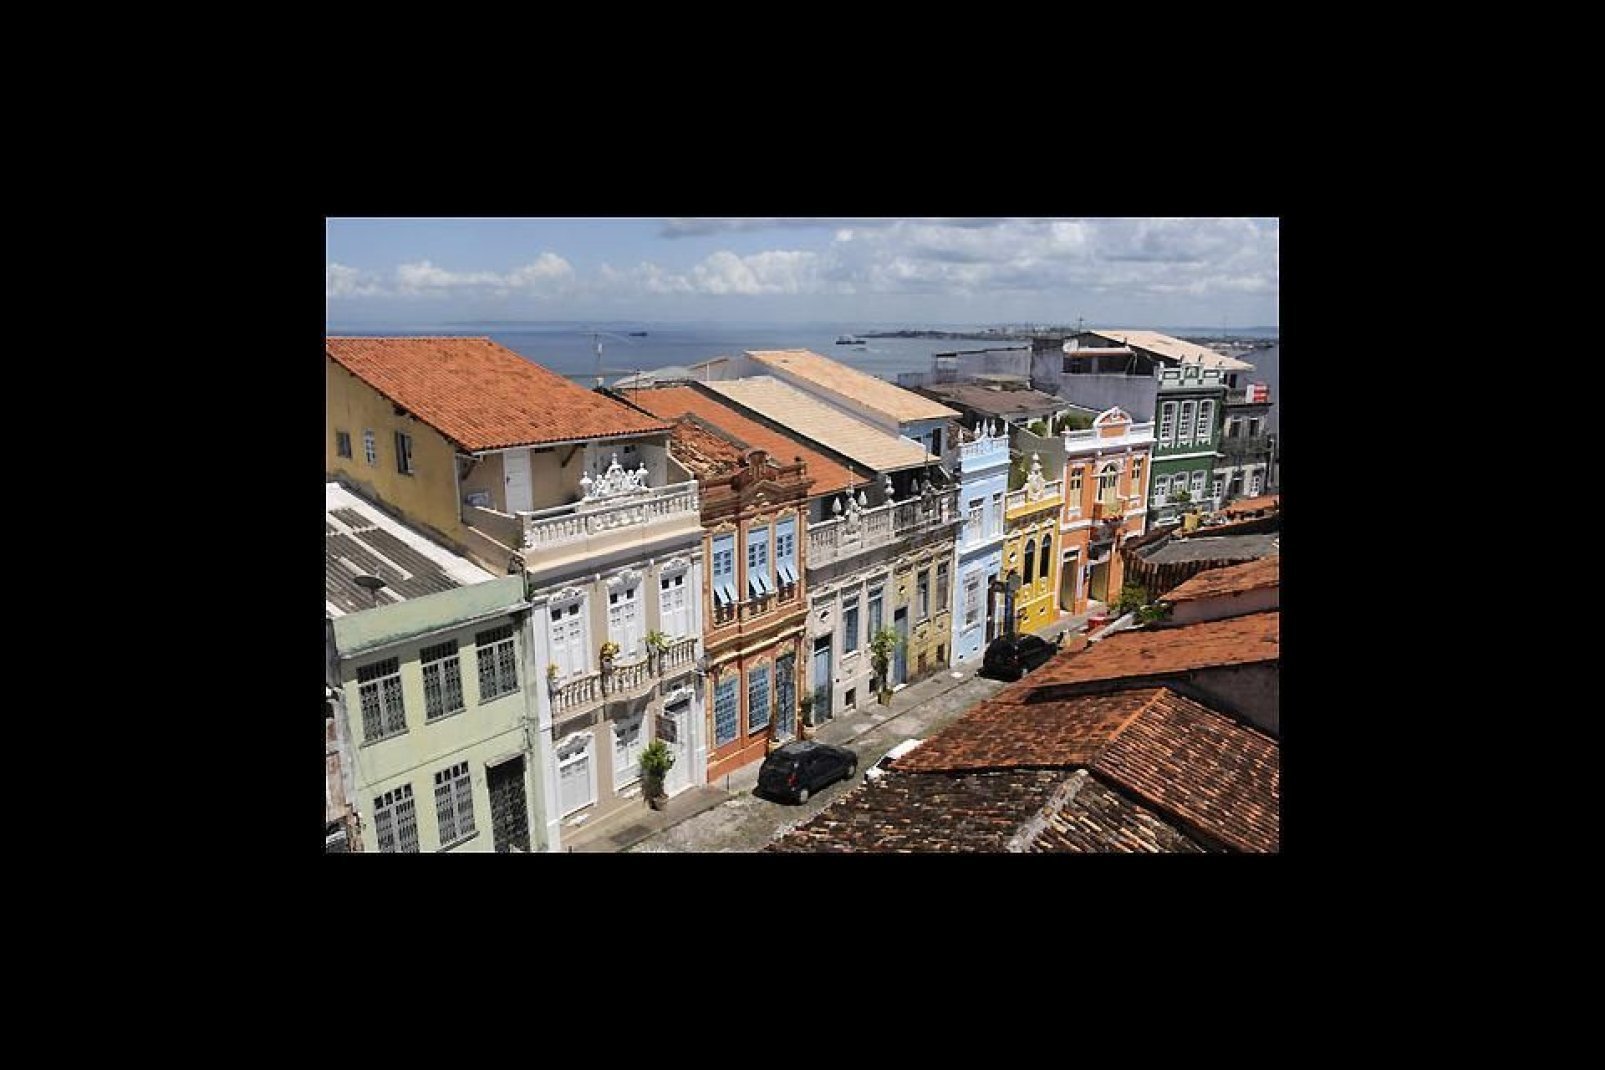 Le Pelourinho, centre historique classé à l'Unesco, saura vous retenir par ses façades colorées et ses charmantes ruelles pavées.